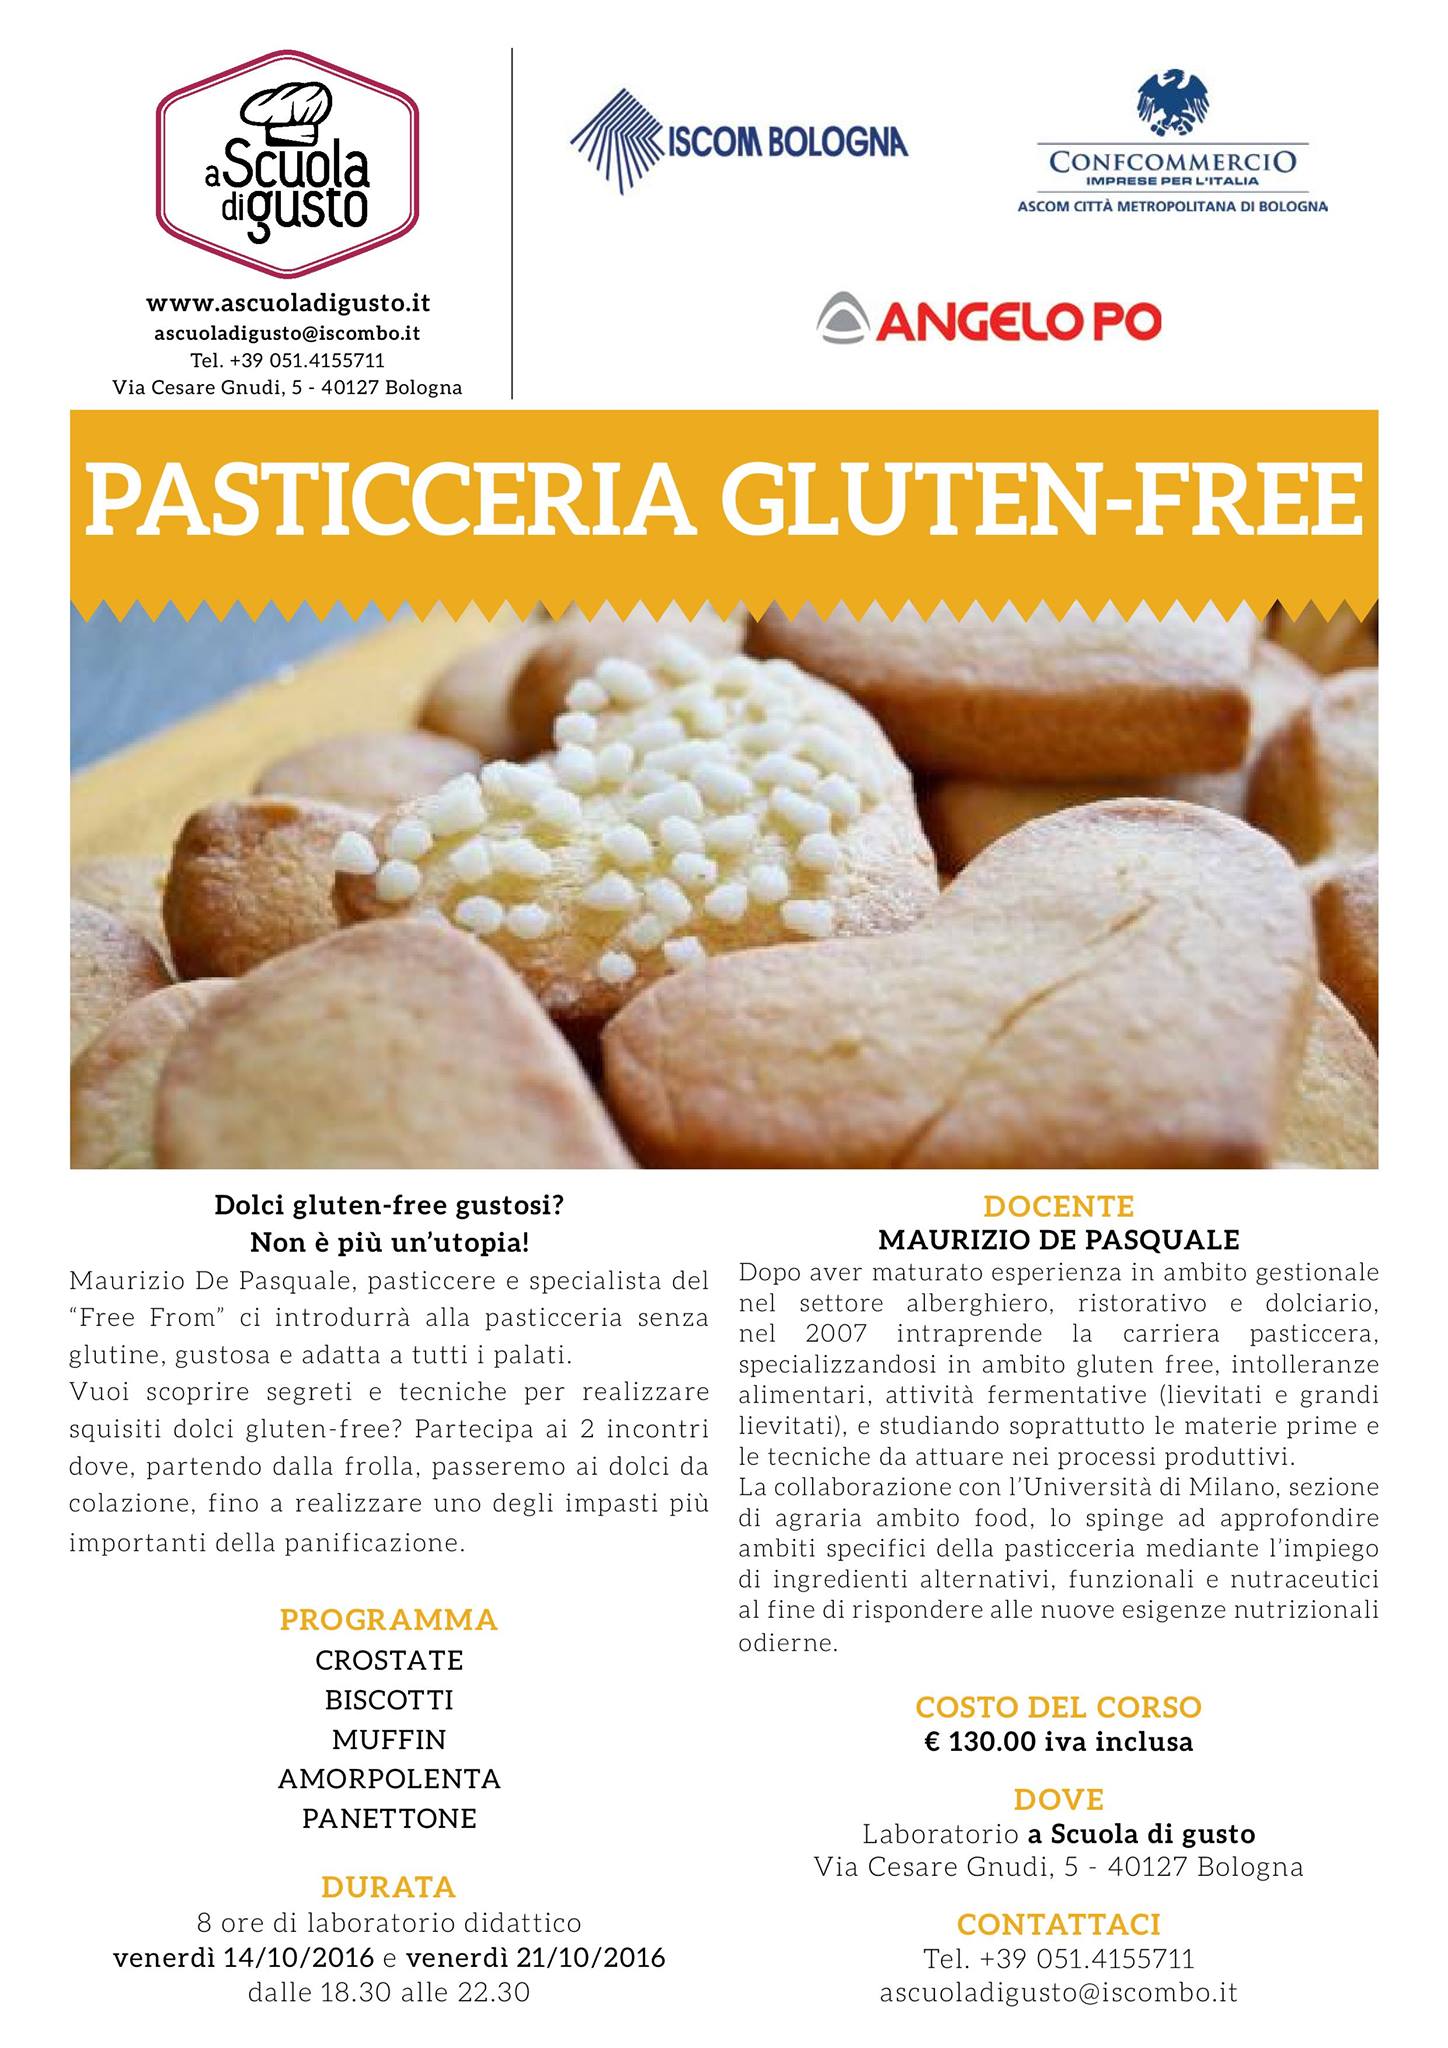 Pasticceria Gluten-Free